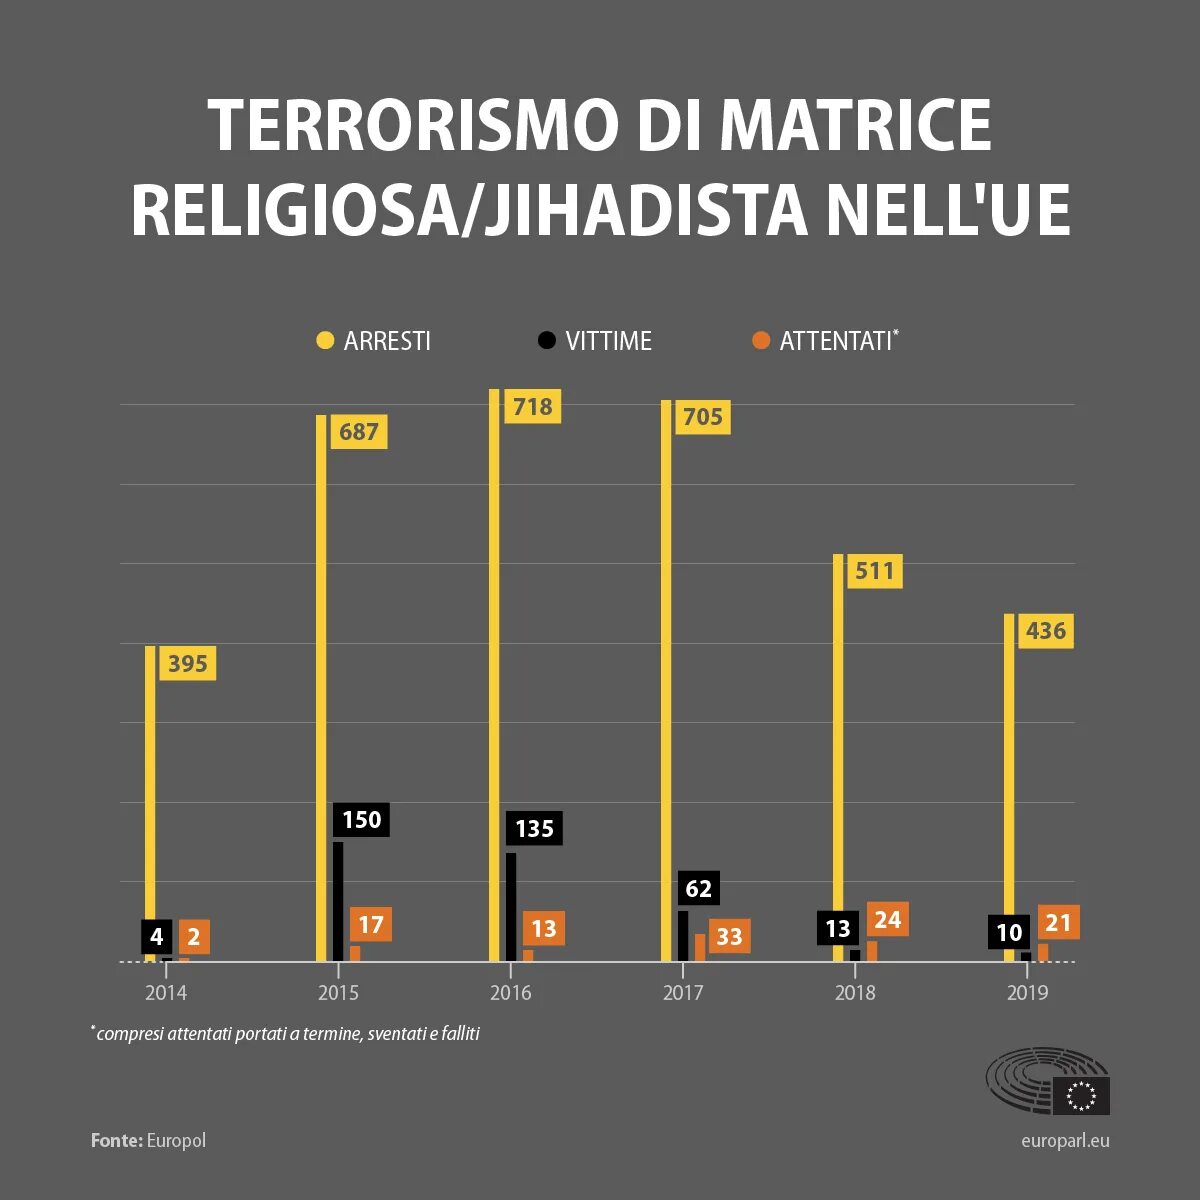 Последнее число жертв теракта. Статистика терроризма. Теракты в Европе статистика. Диаграмма терроризма в мире. Статистика терроризма в мире.